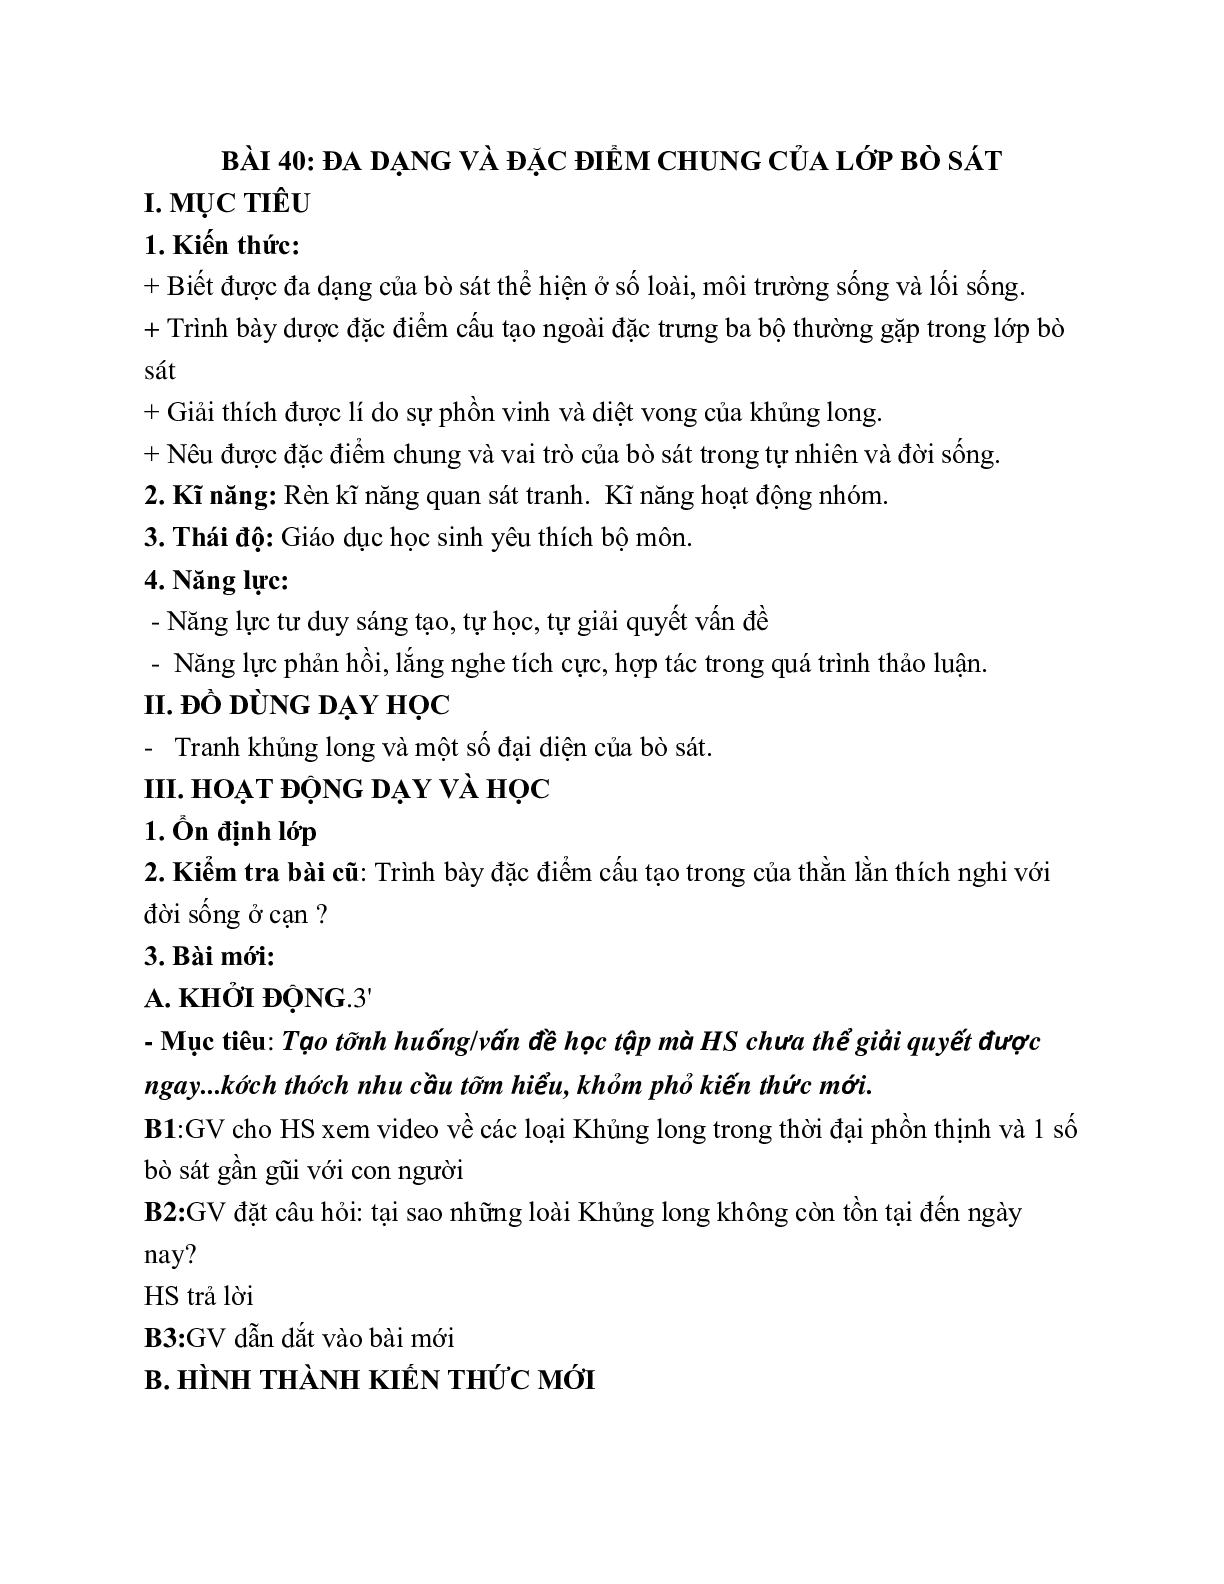 Giáo án Sinh học 7 Bài 40: Đa dạng và đặc điểm chung của lớp Bò sát mới nhất (trang 1)